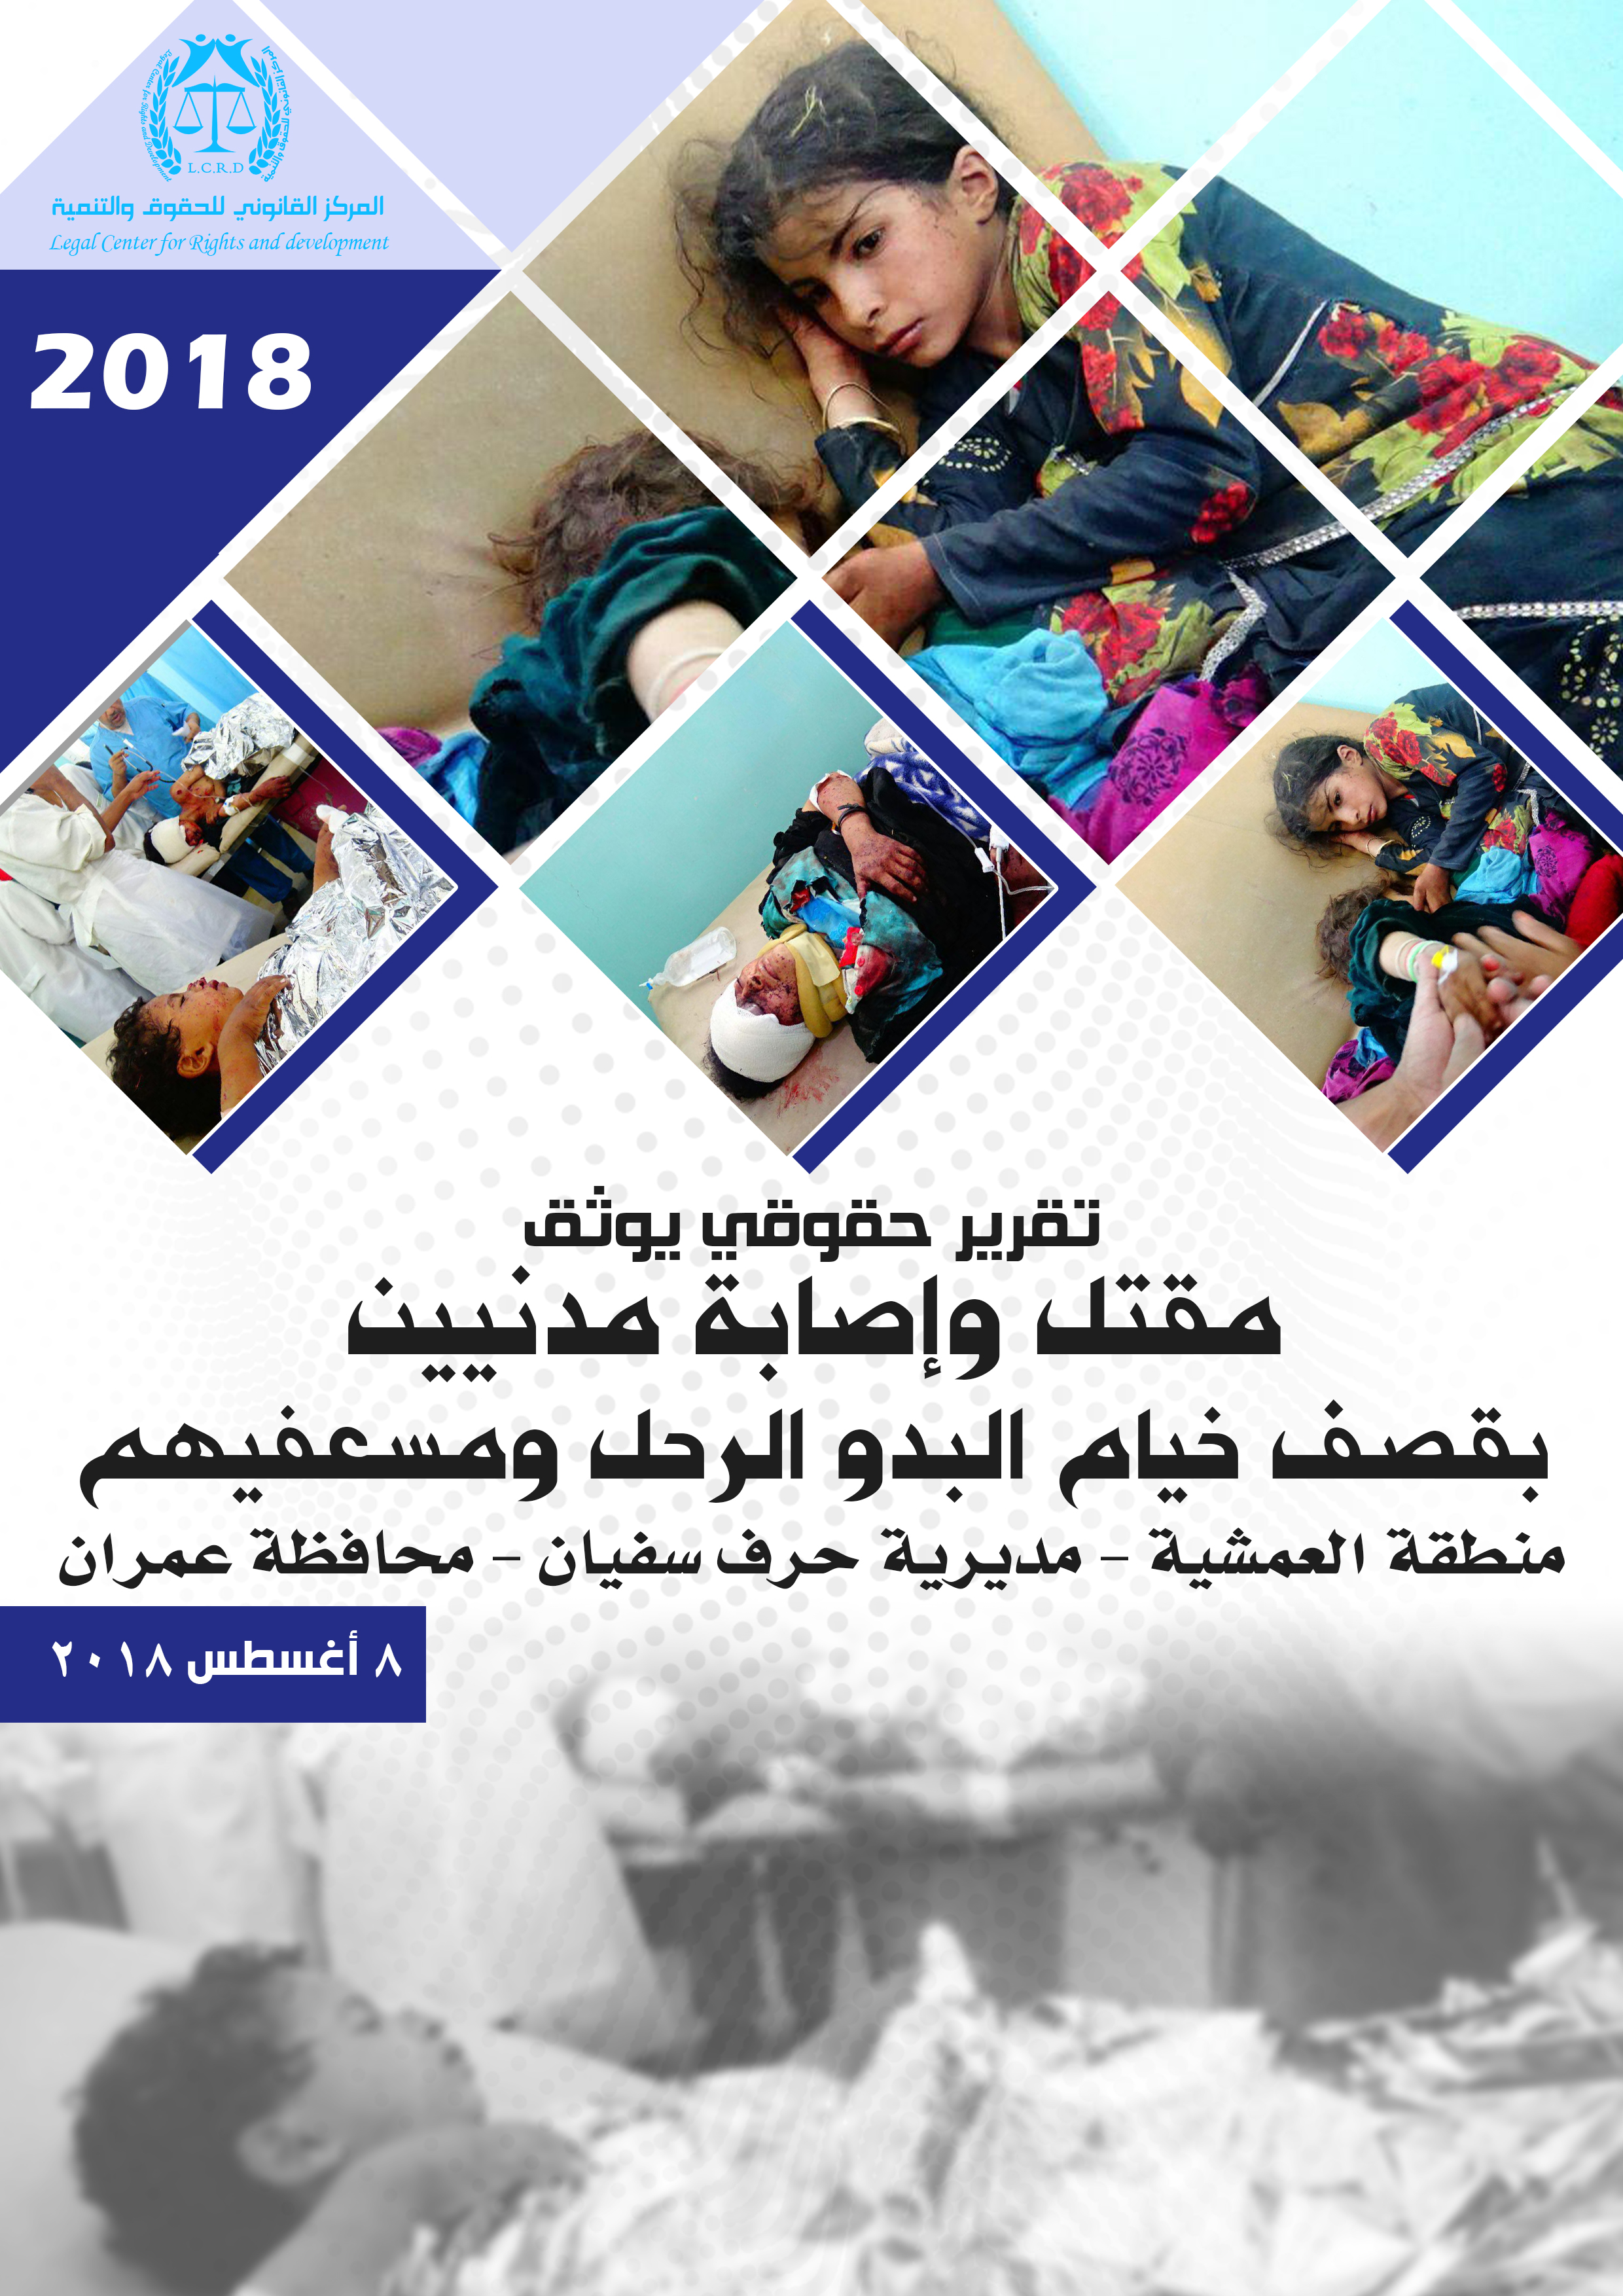 قصف خيام البدو الرحل ومسعفيهم – العمشية – حرف سفيان عمران 8-8-2018